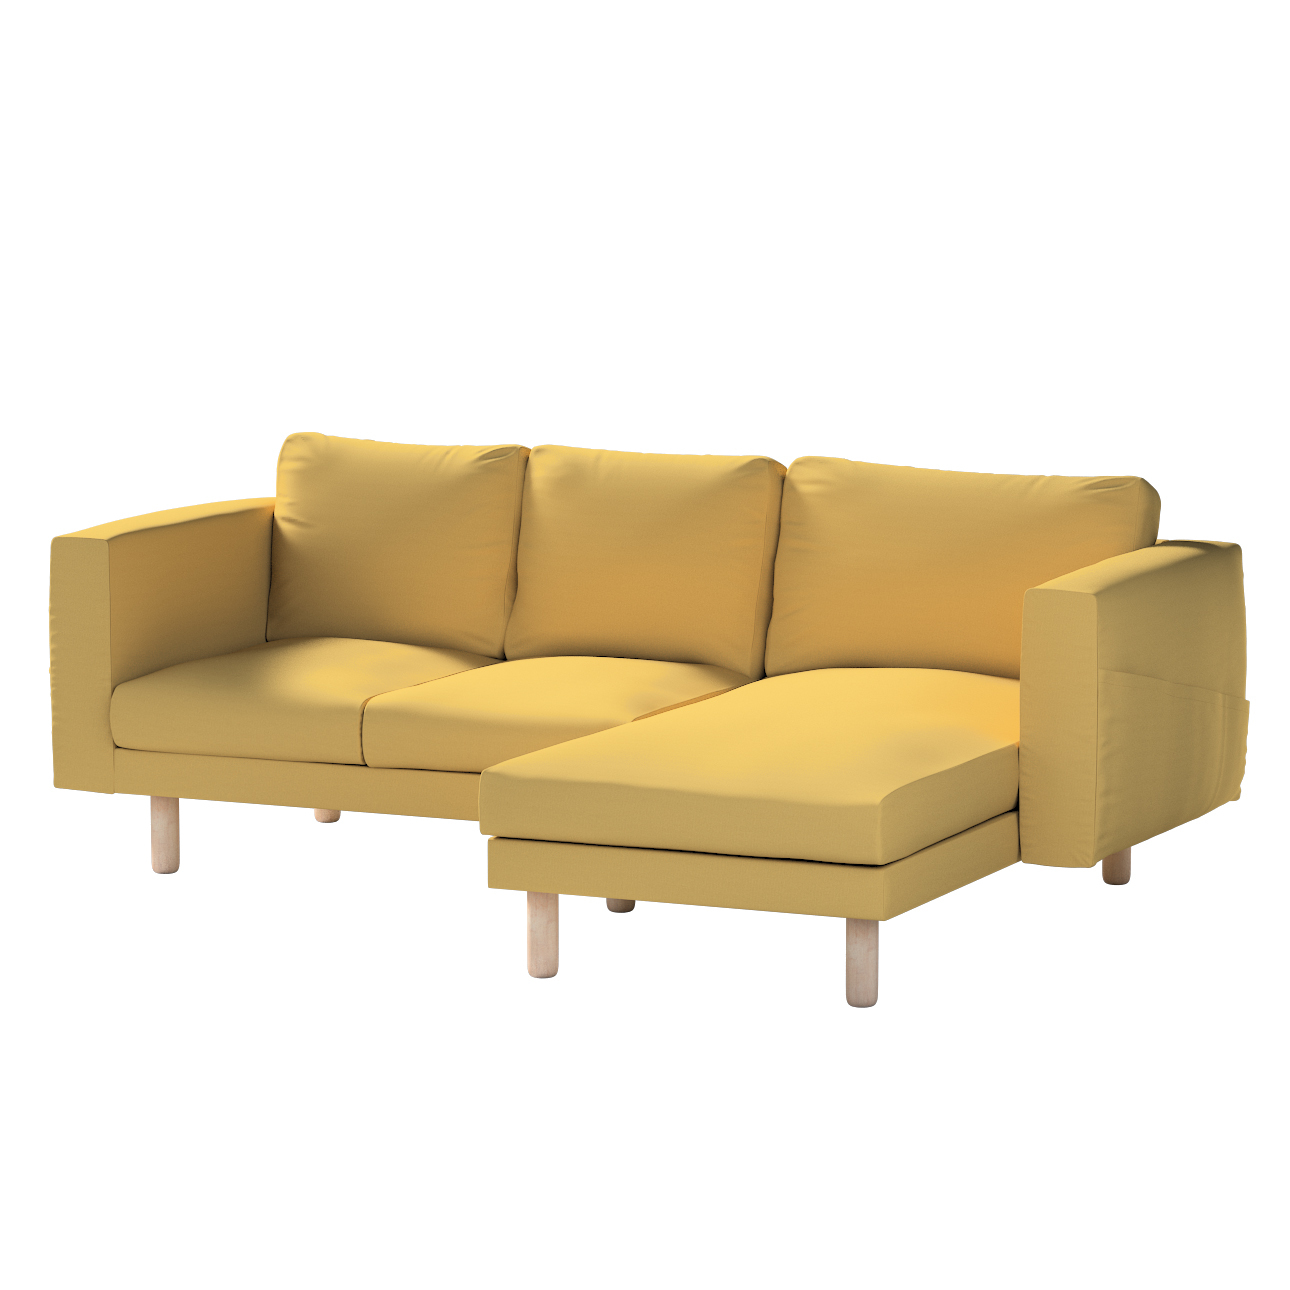 Bezug für Norsborg 3-Sitzer Sofa mit Recamiere, chiffongelb, Norsborg Bezug günstig online kaufen